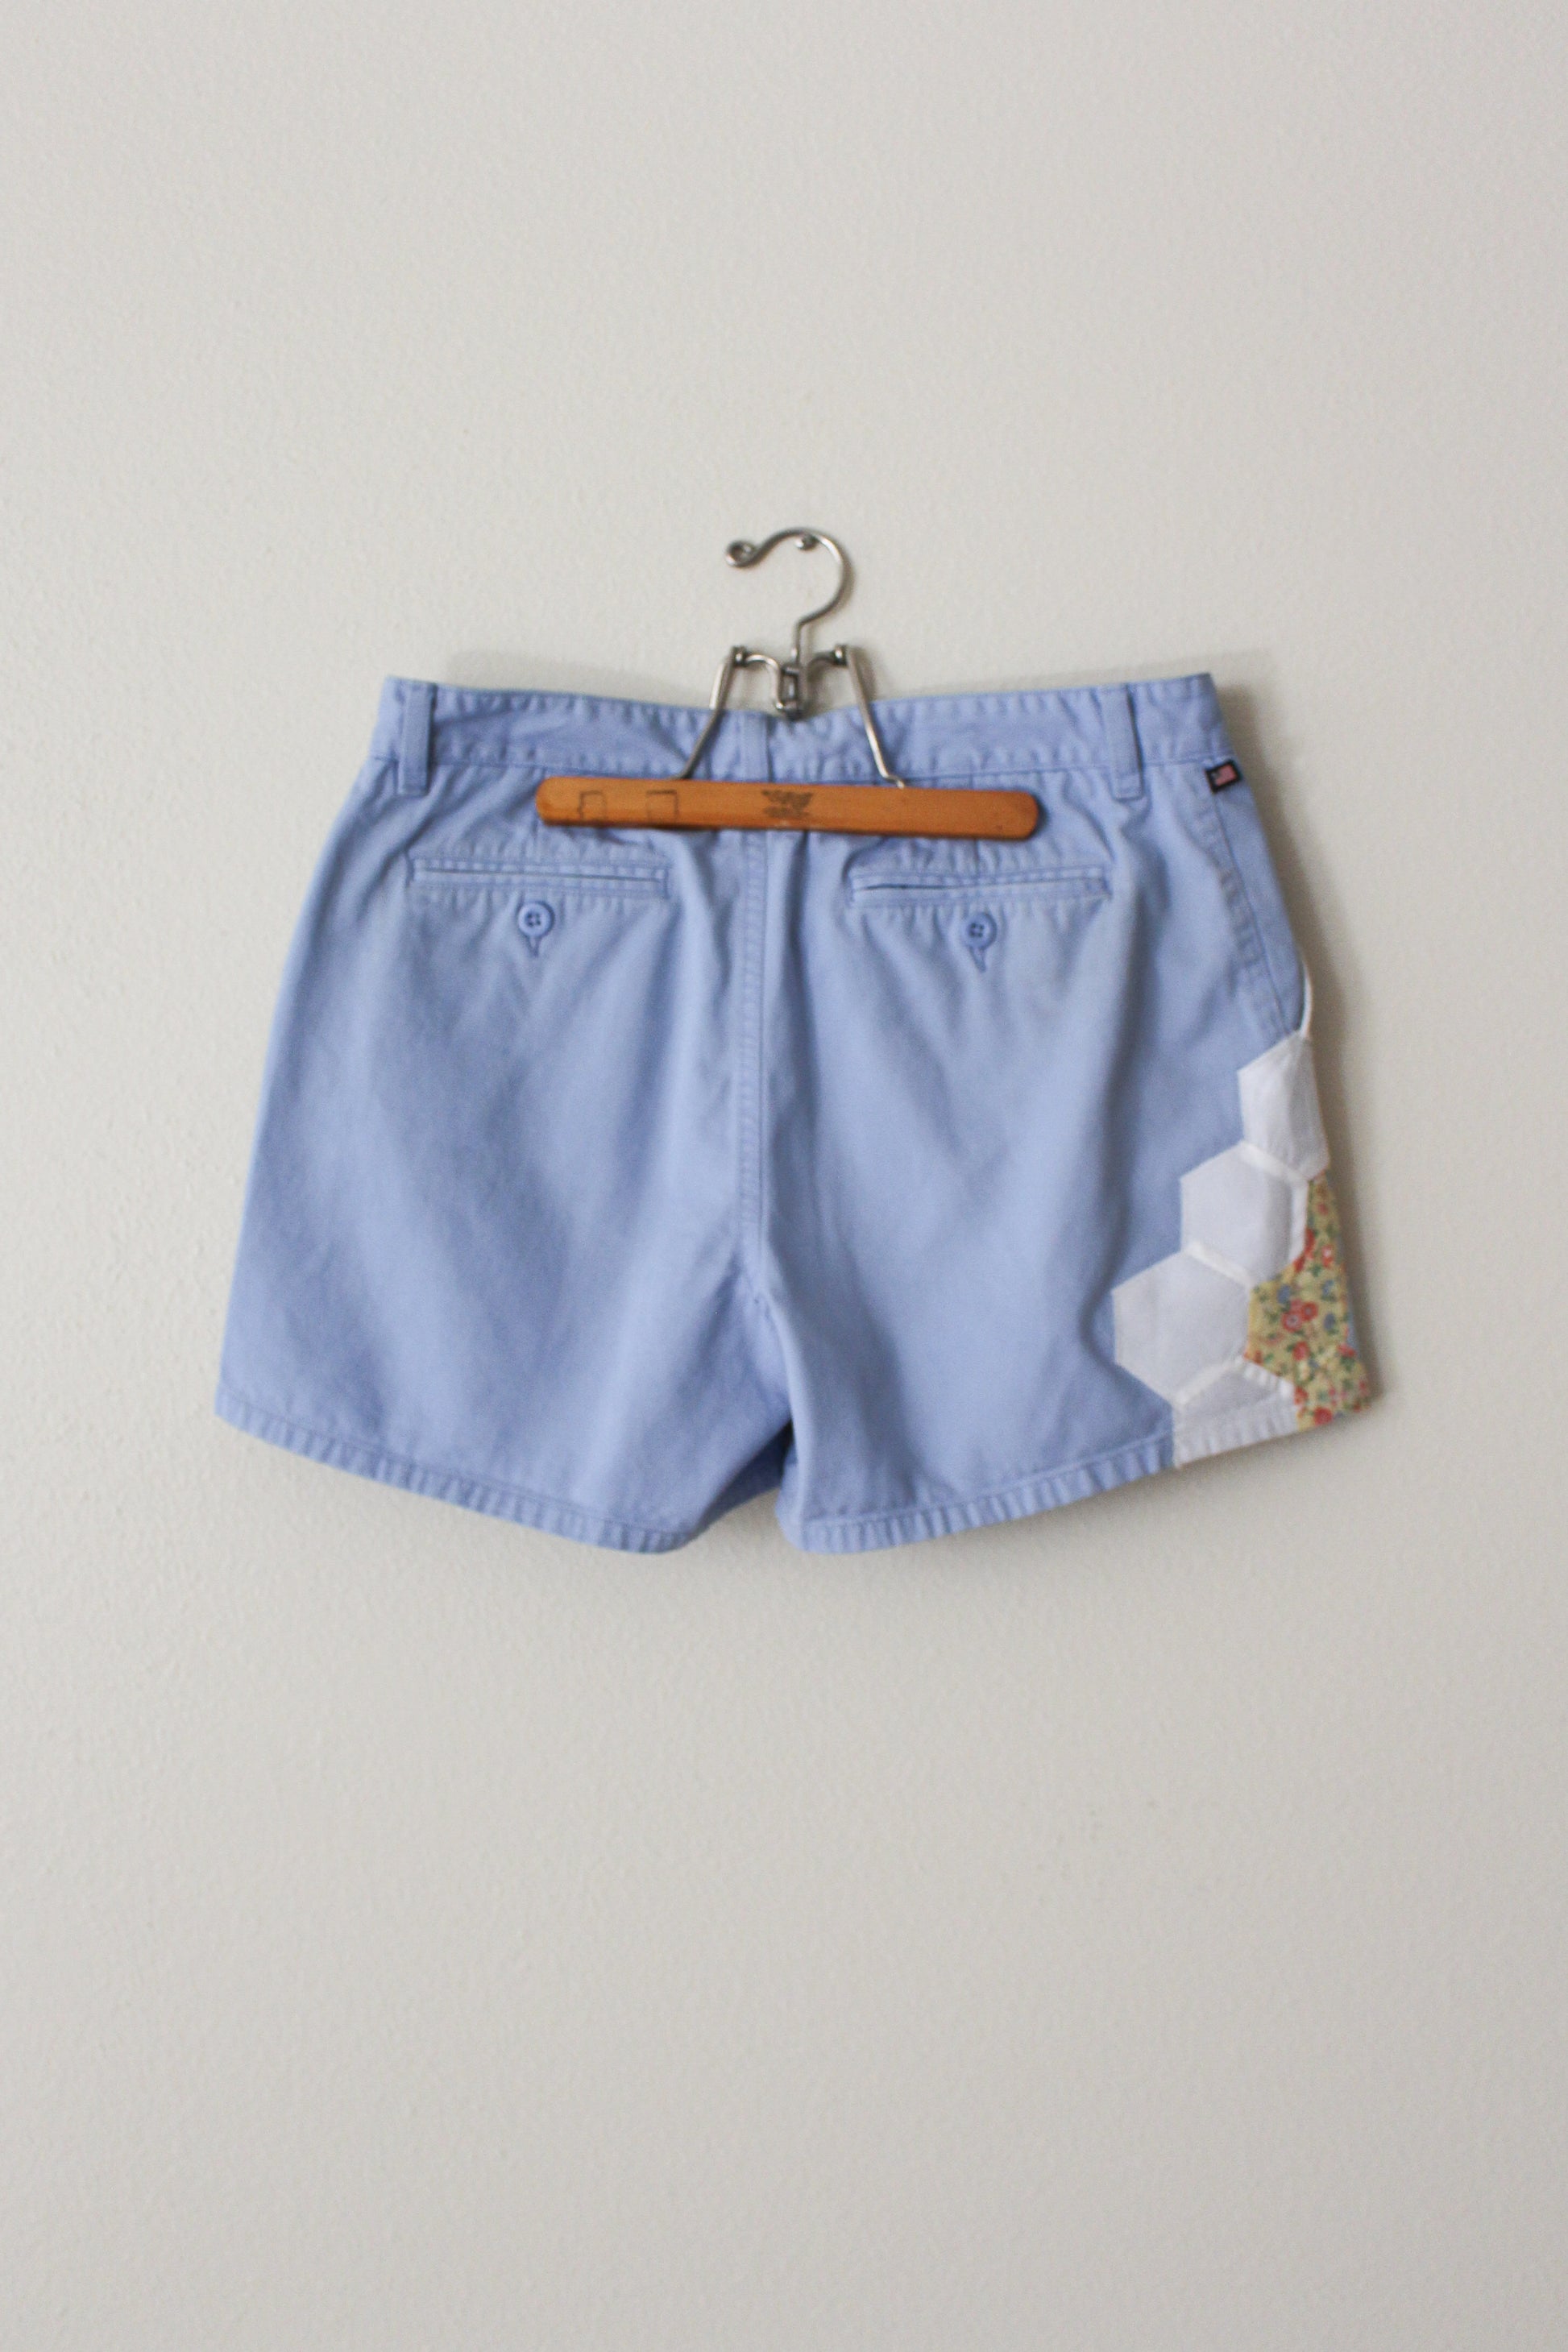 light blue quilt block shorts, ralph lauren upcycled shorts, size 8 upcycled shorts